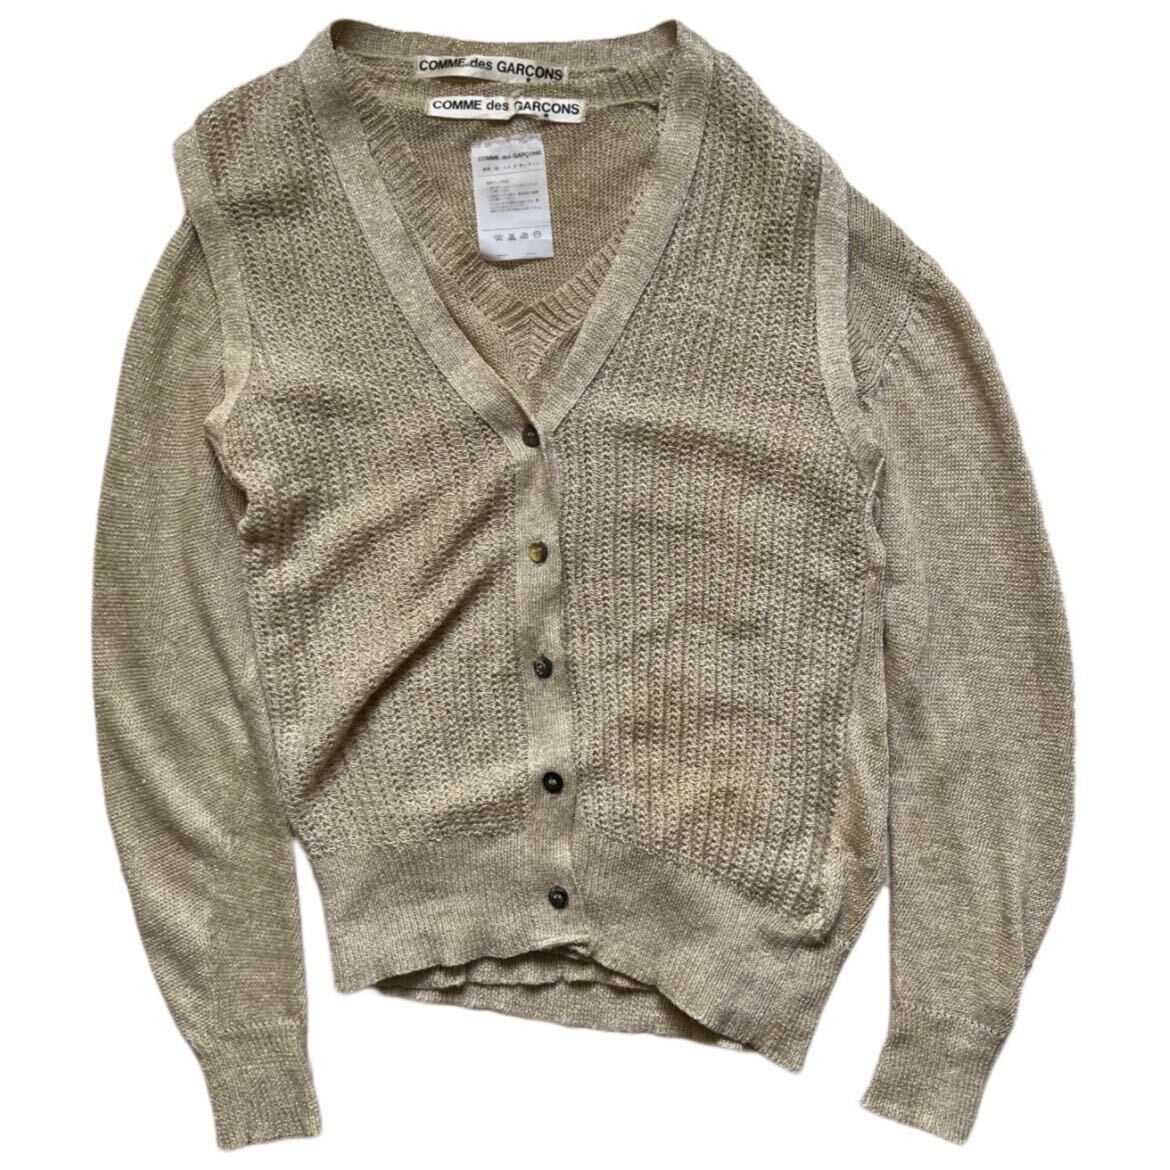 希少 70s COMME does GARCONS ensemble glitter knit cardigan archive collection sweater ReiKawakubo Japanese label Rare vintage 初期_画像1